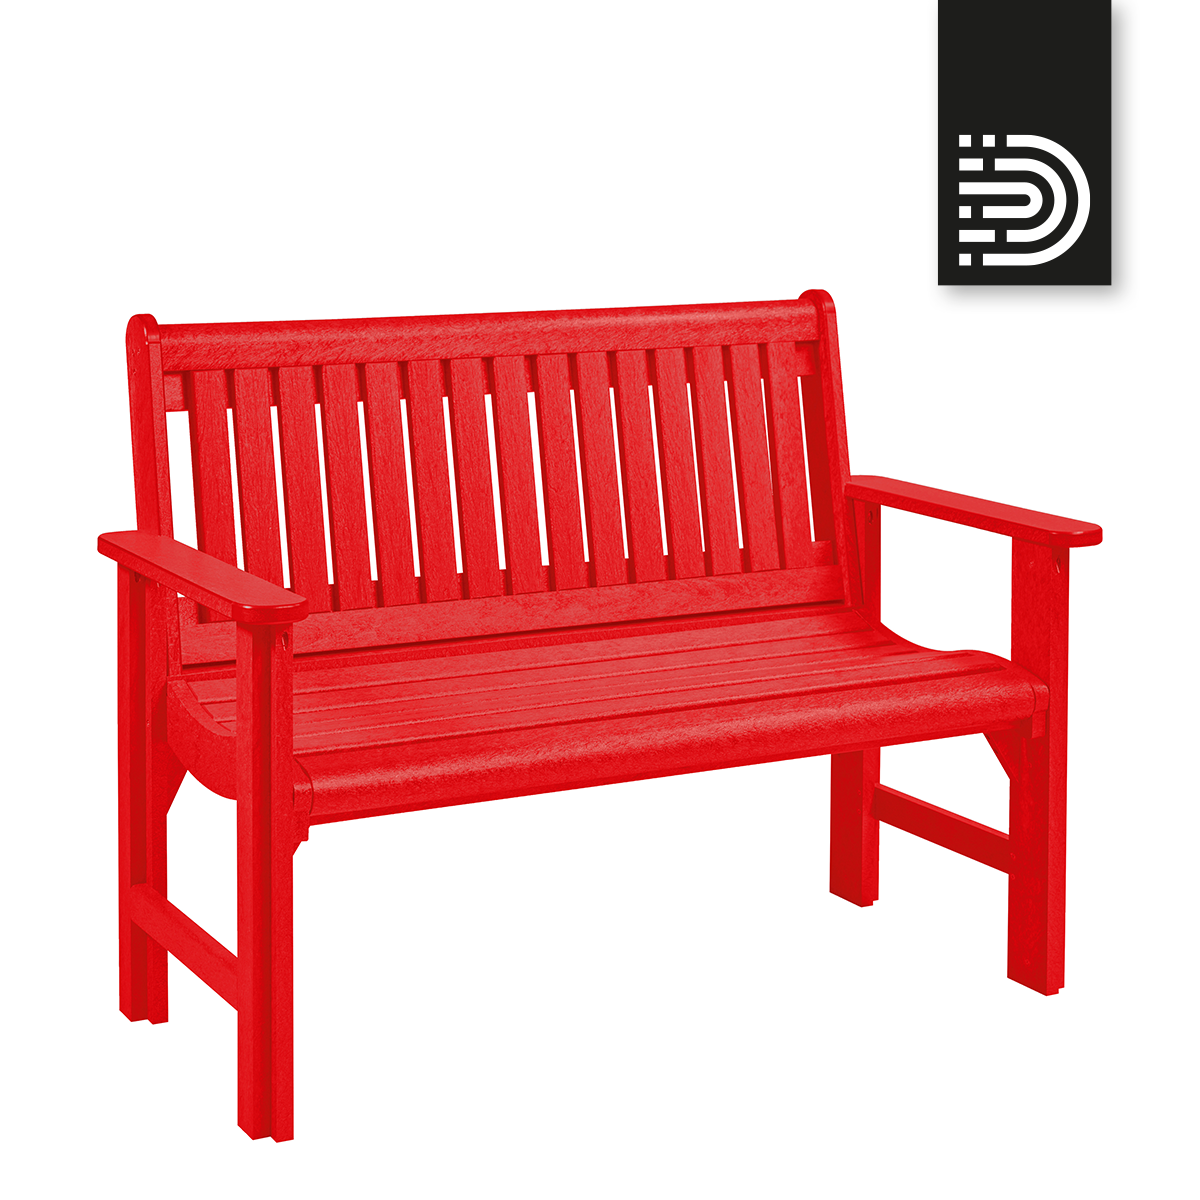 B01 4' Premium Garden Bench- red 01